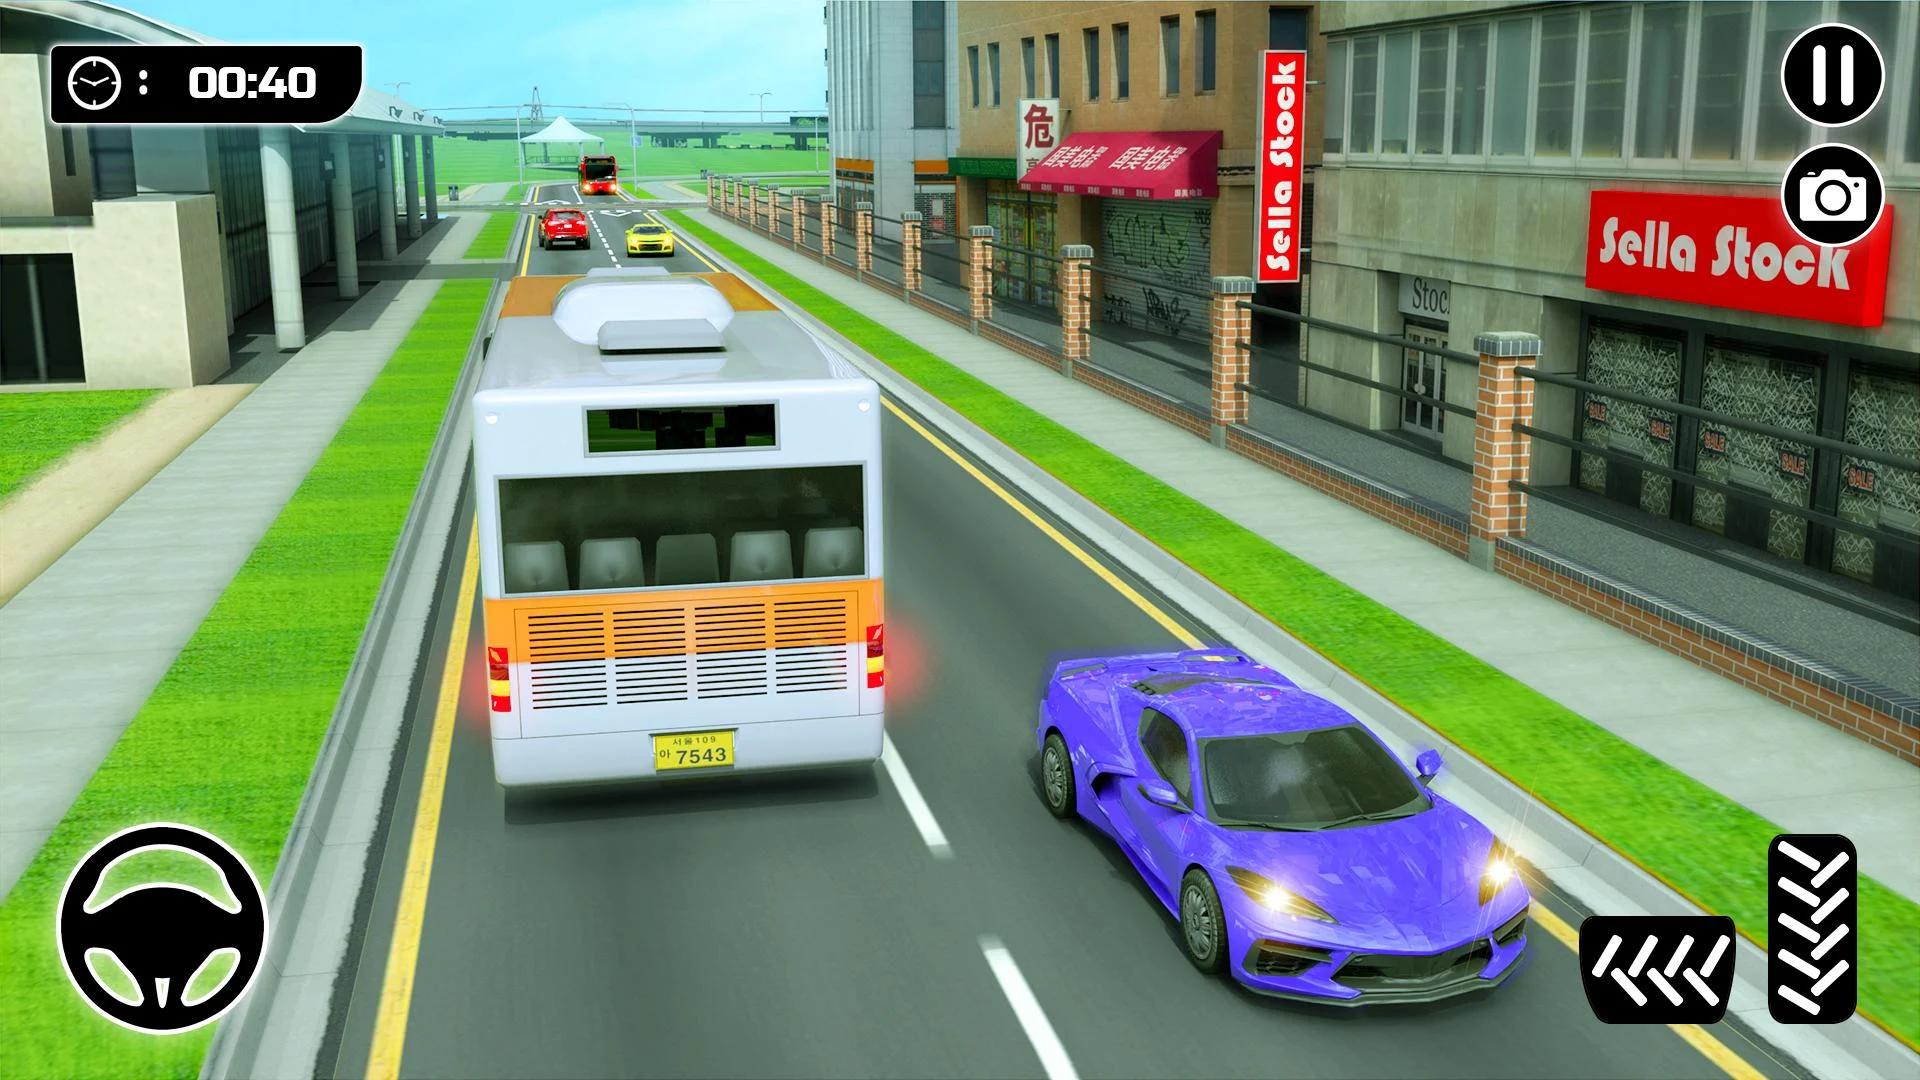 Coach Bus Simulator - Đồng hành cùng những chiếc xe bus sang trọng trên những con đường đầy thử thách với Coach Bus Simulator! Trở thành tài xế tài ba và giúp đưa hành khách đến nơi một cách an toàn. Xem ngay hình ảnh để trải nghiệm những góc độ vàng và thưởng thức tầm nhìn toàn cảnh trong trò chơi này!